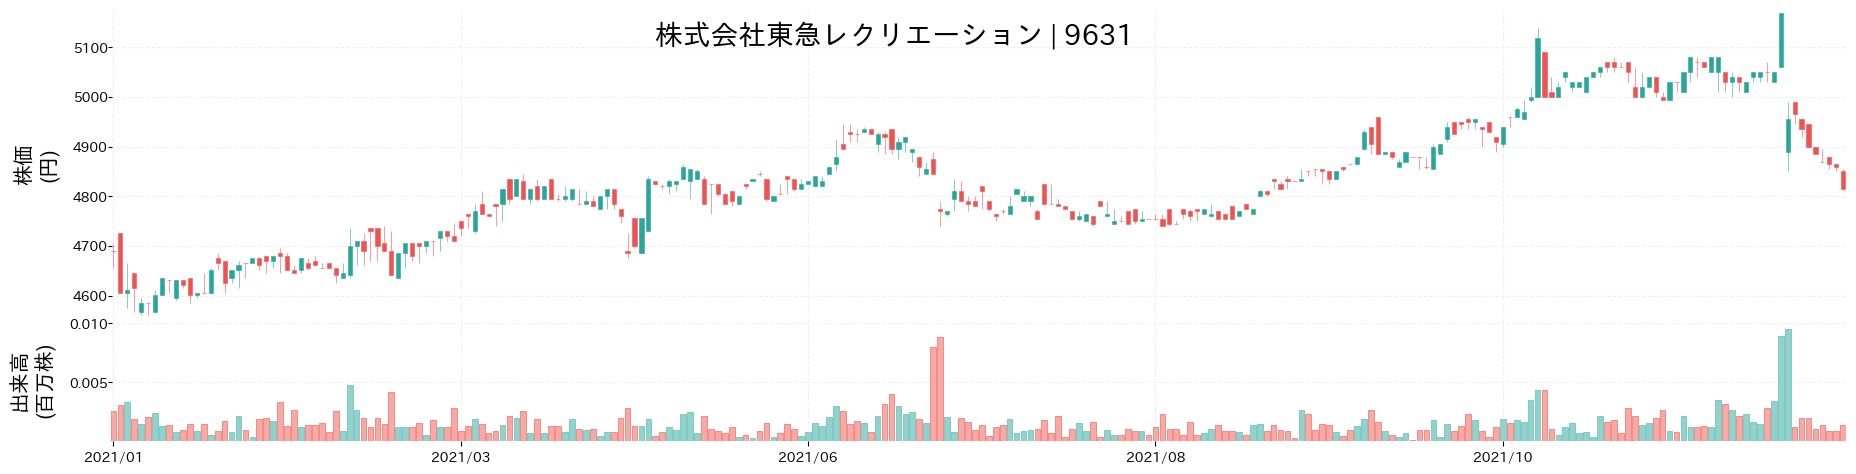 東急レクリエーションの株価推移(2021)